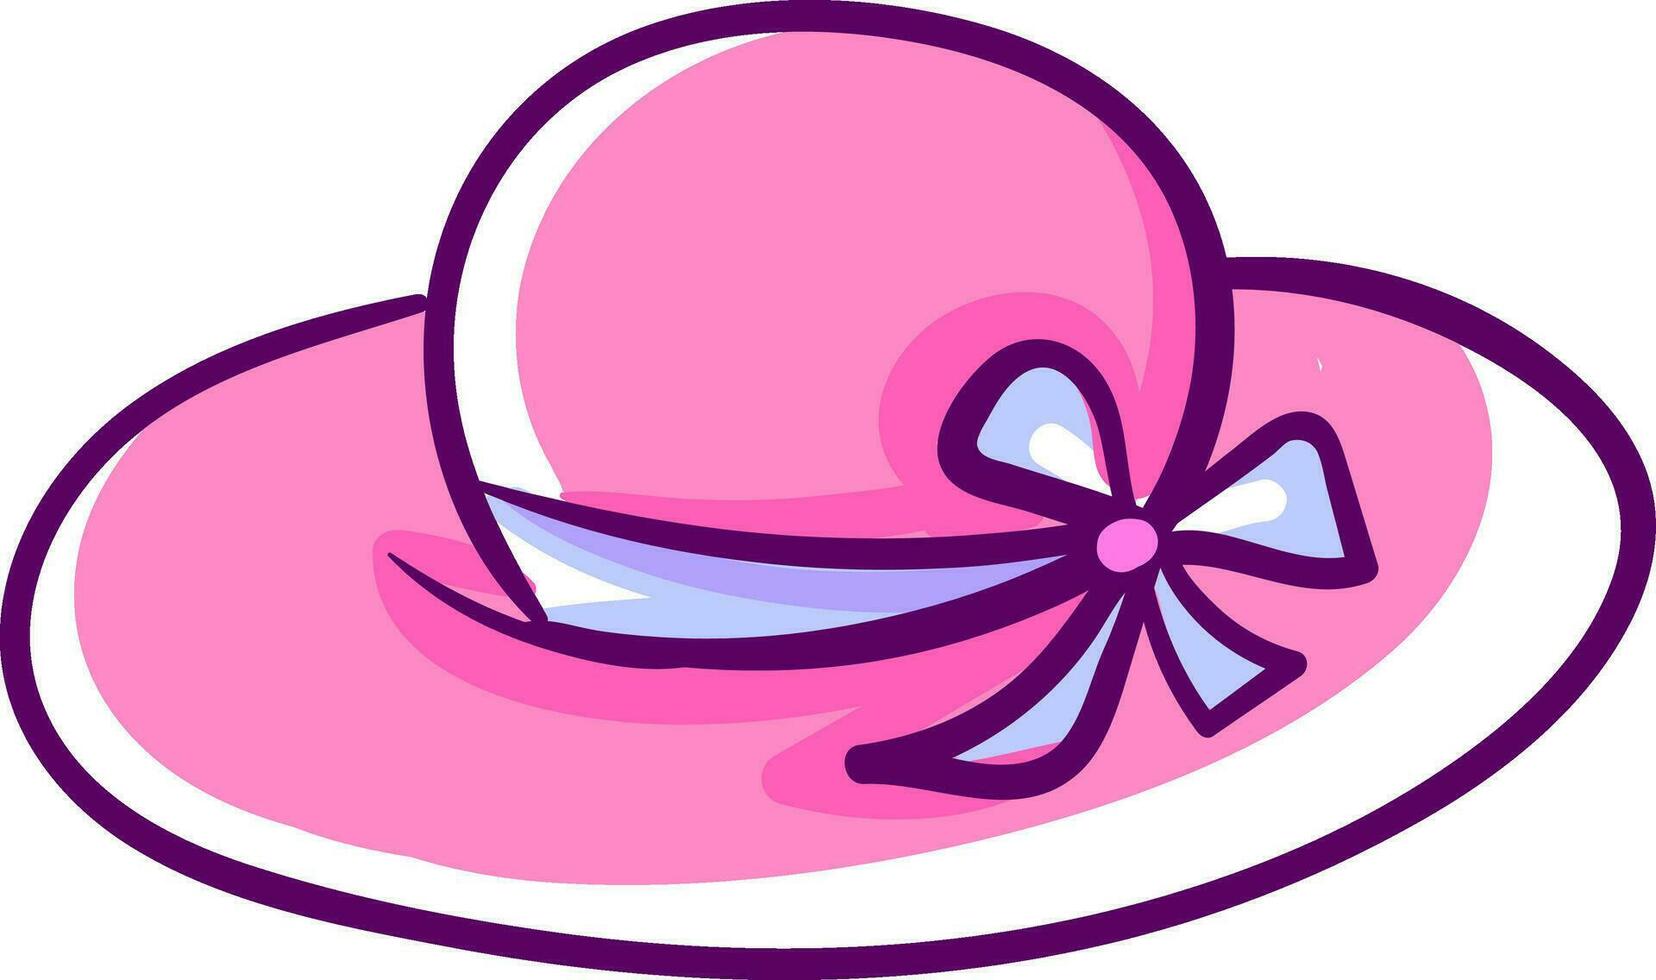 Big pink hat, illustration, vector on white background